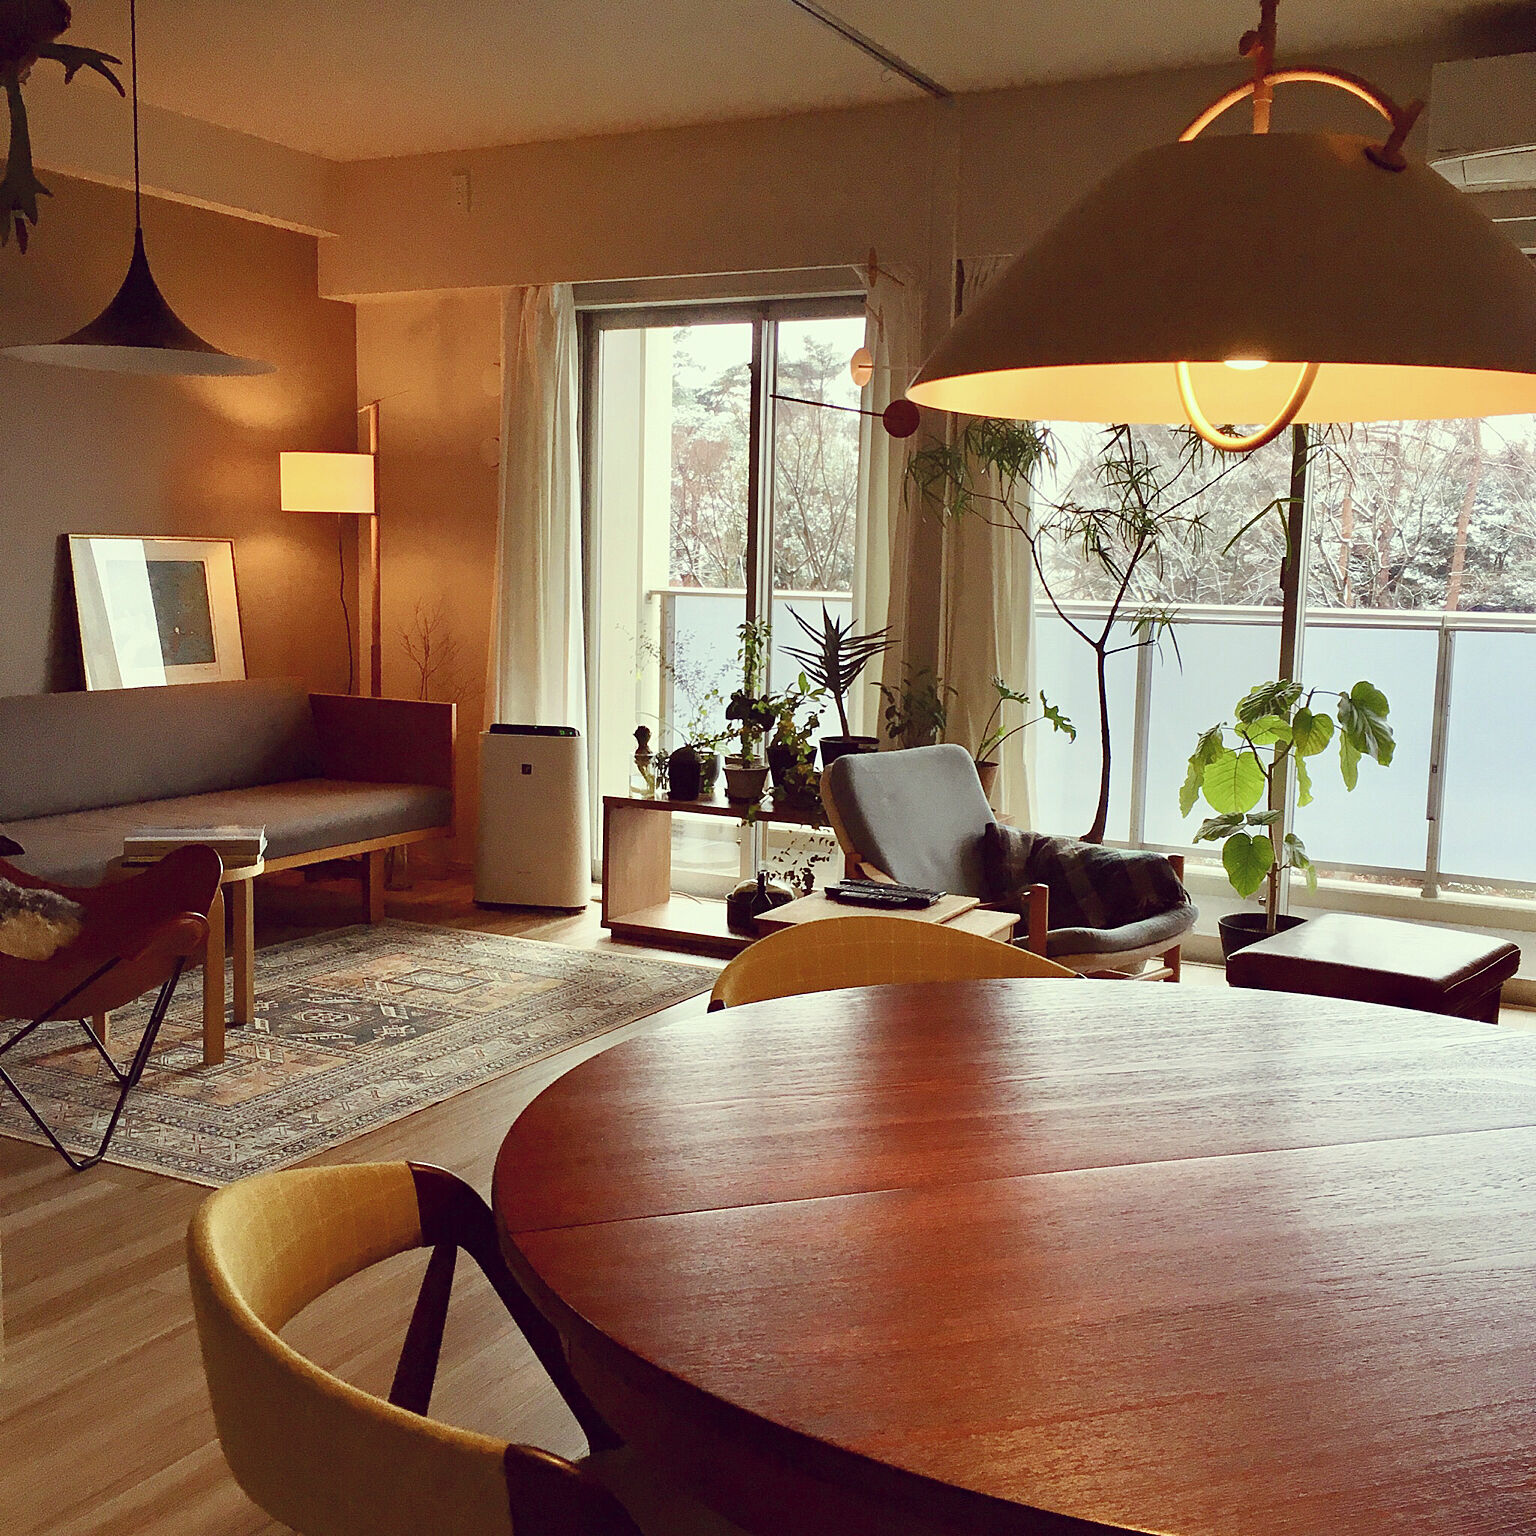 シンプルを情趣深く デンマーク家具とつくる 癒しの空間 By Ko Yo さん Roomclip Mag 暮らしとインテリアのwebマガジン